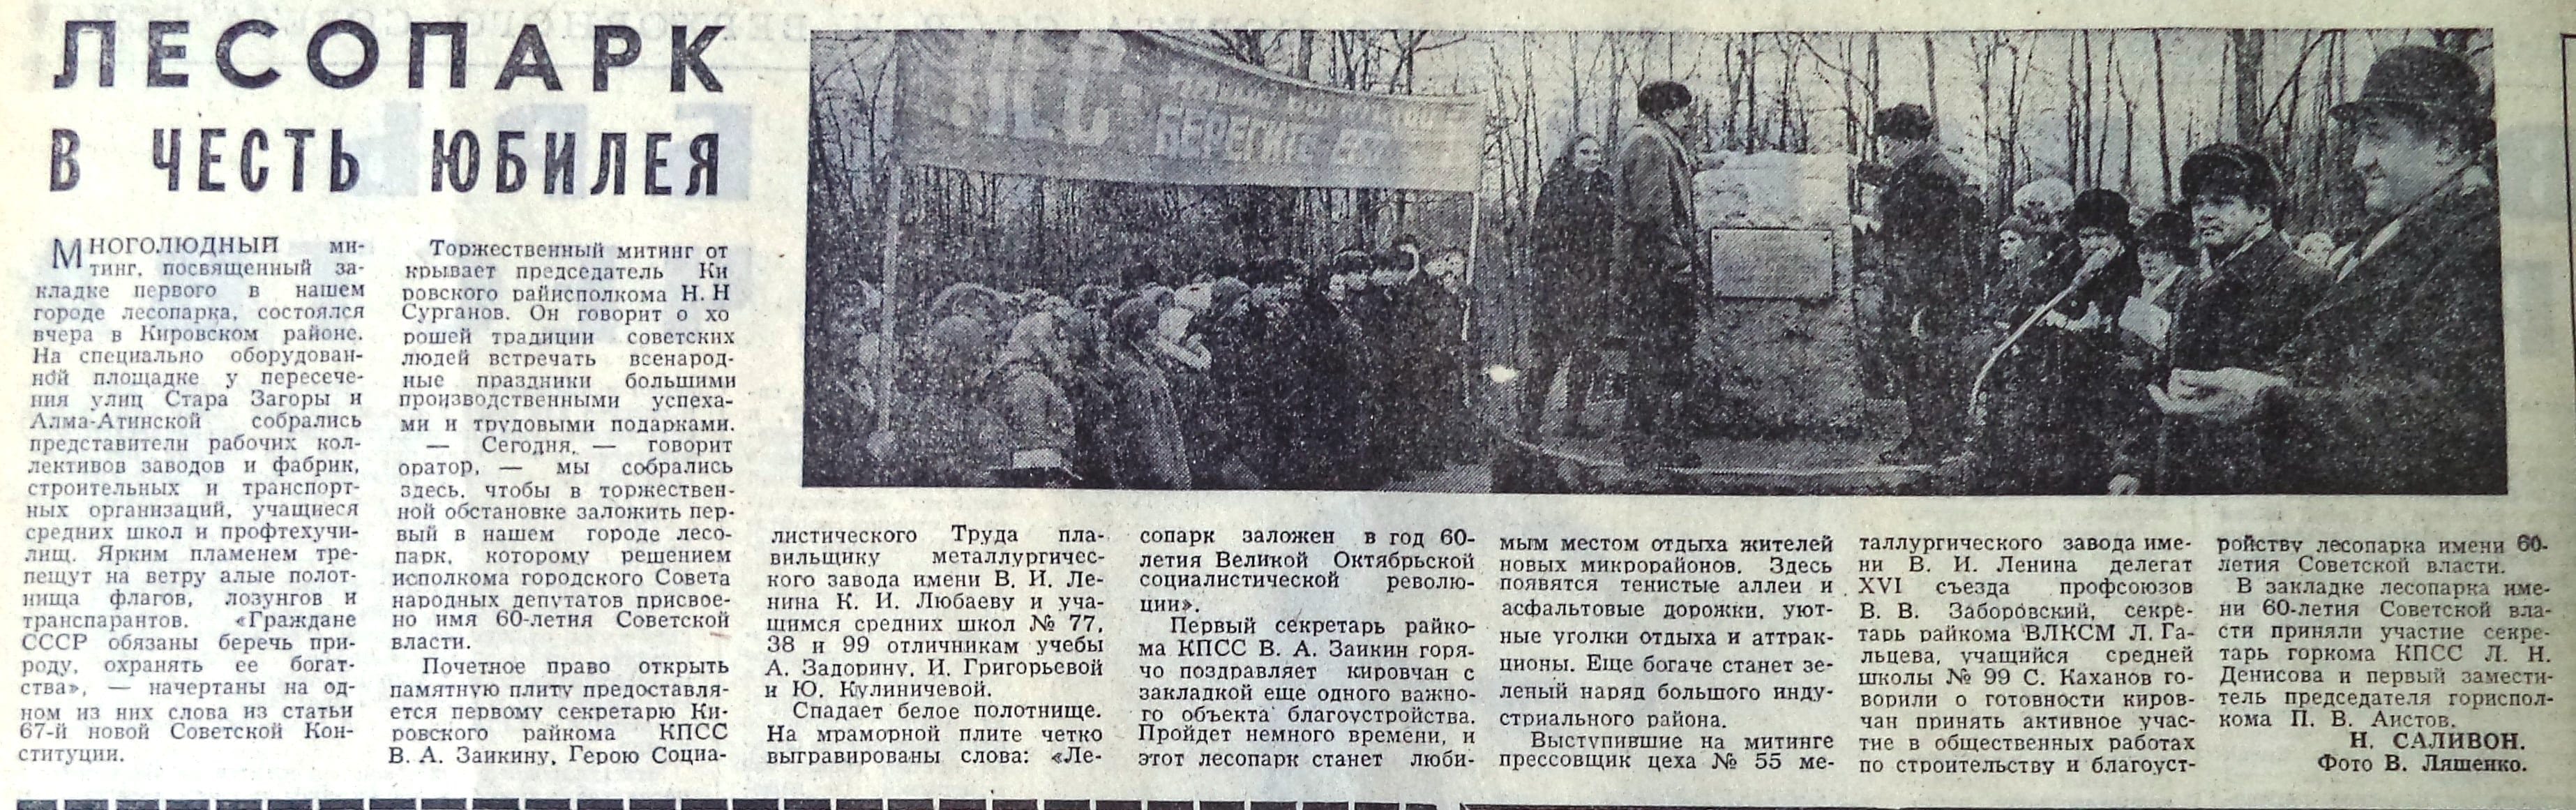 Стара Загора-ФОТО-123-ВЗя-1977-11-03-на закладке Лесопарка-min-min